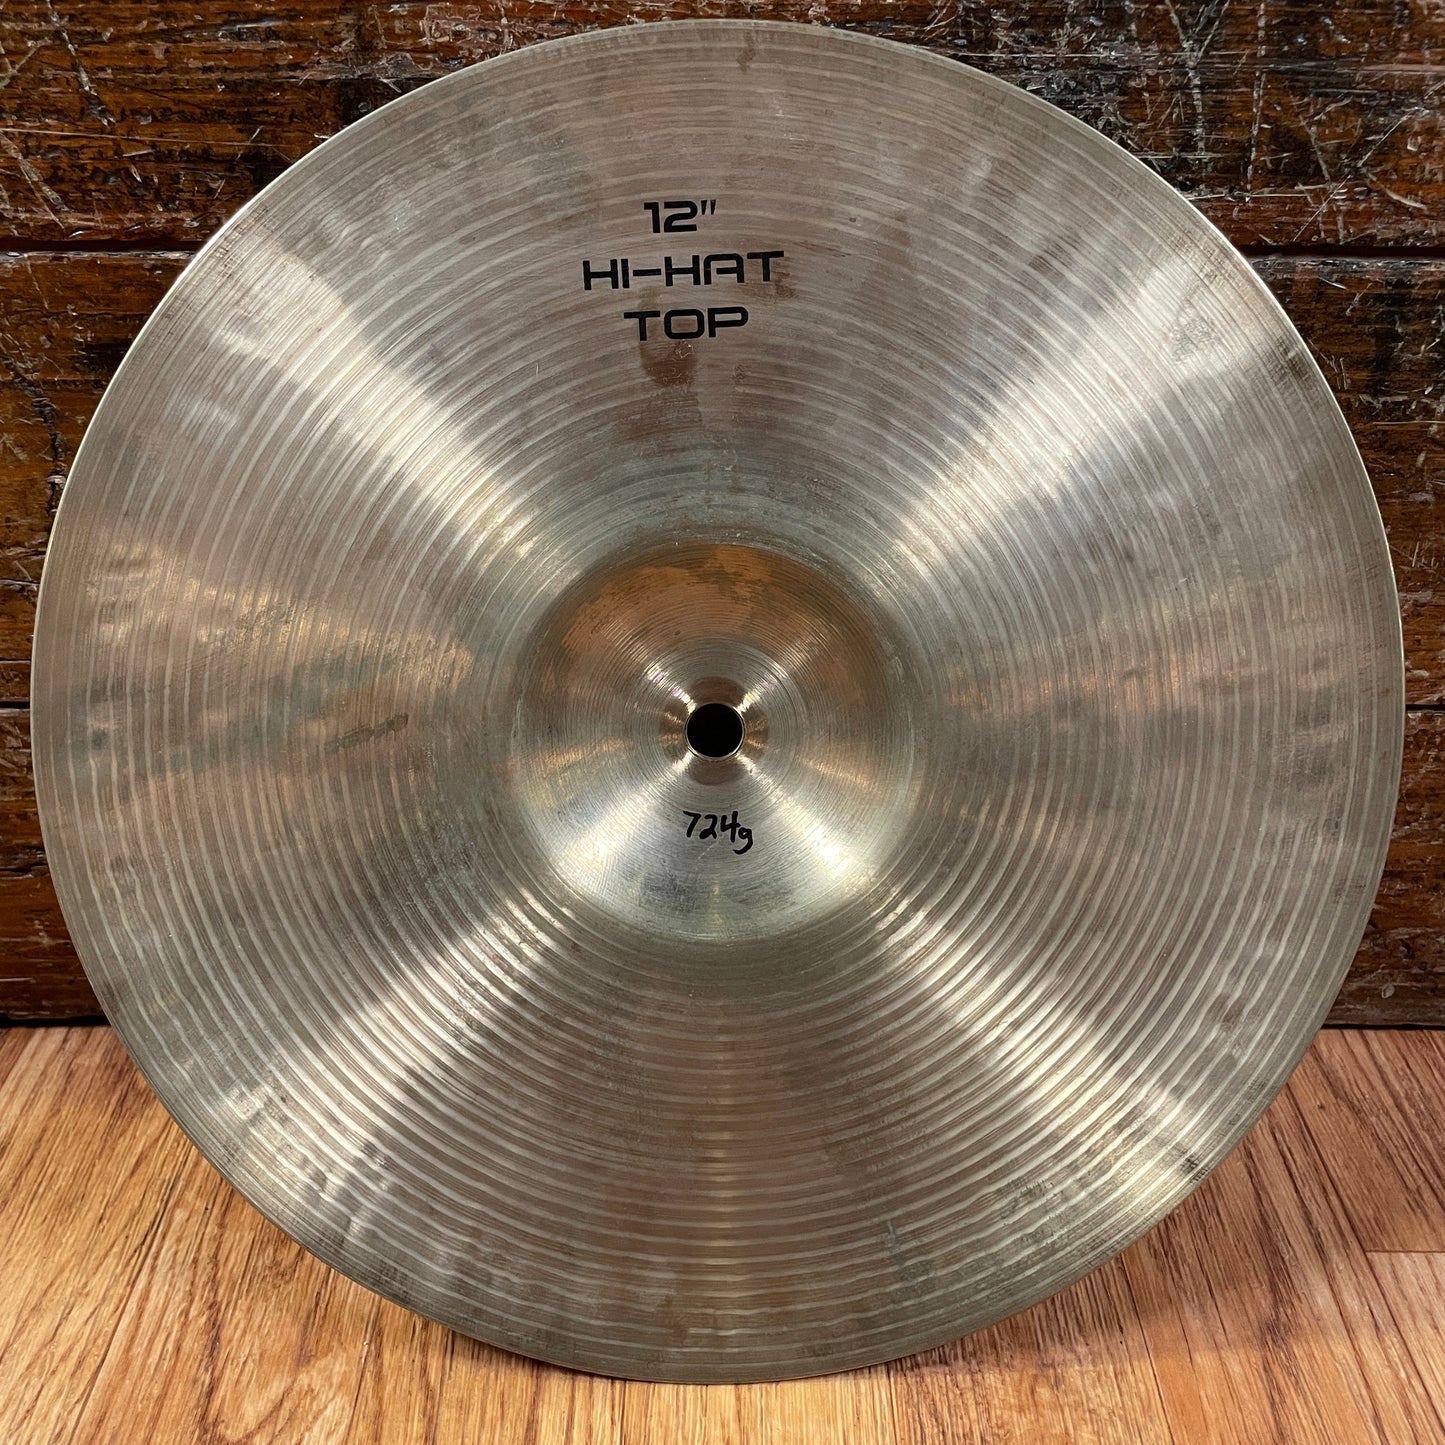 12" Soultone Custom Series Hi-Hat Cymbal Pair 724g/802g *Video Demo*